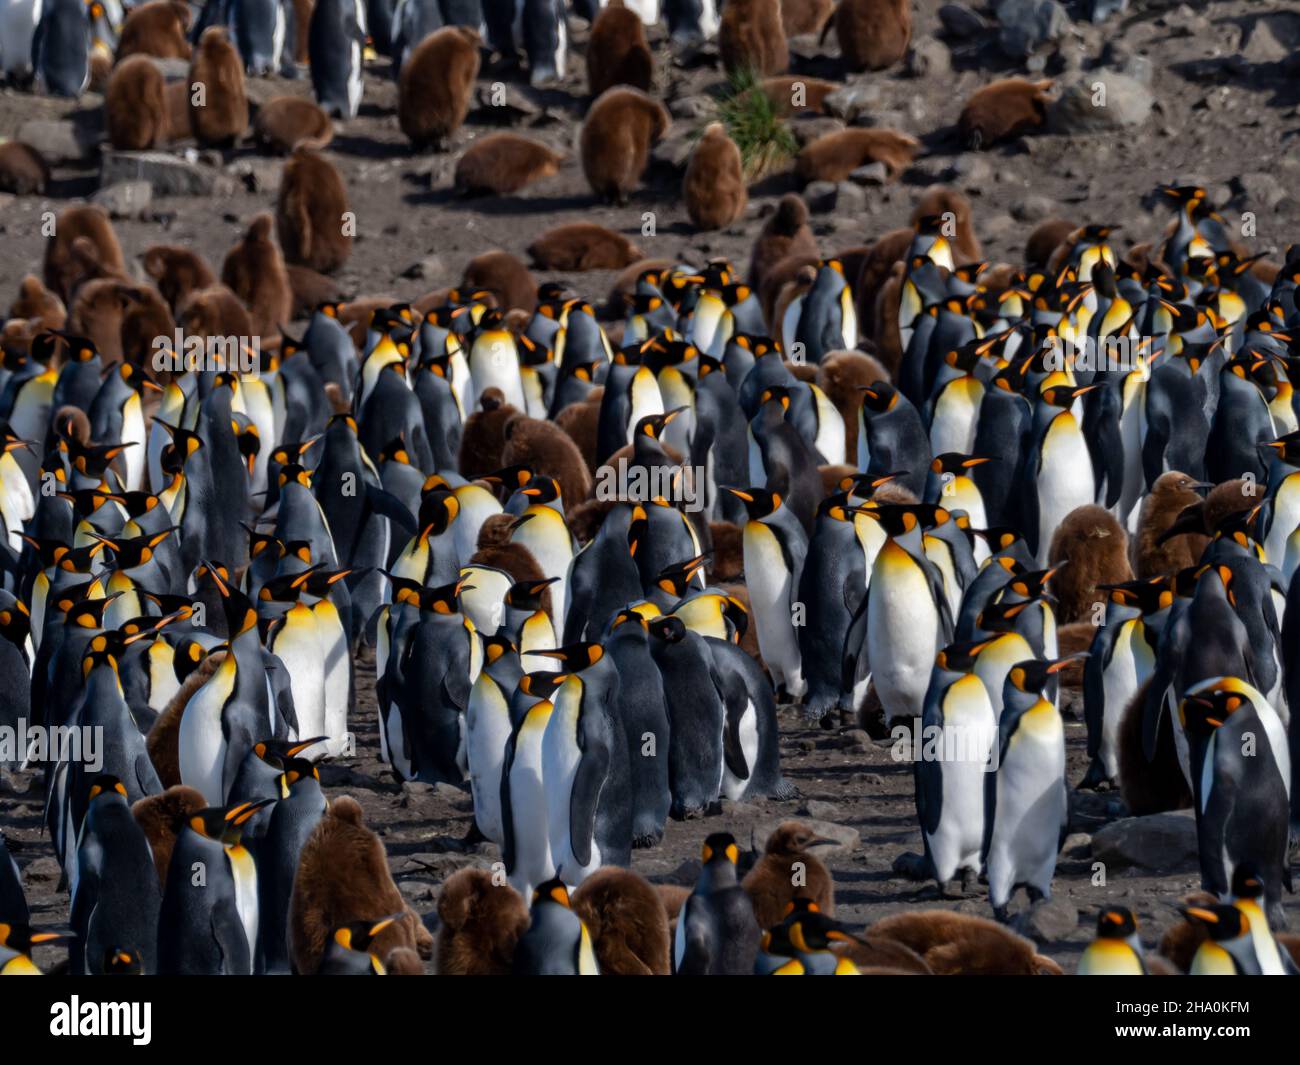 Le Penguin royal, Aptenodytes patagonicus, dans la plus grande colonie de la baie St. Andrews, sur l'île de Géorgie du Sud Banque D'Images